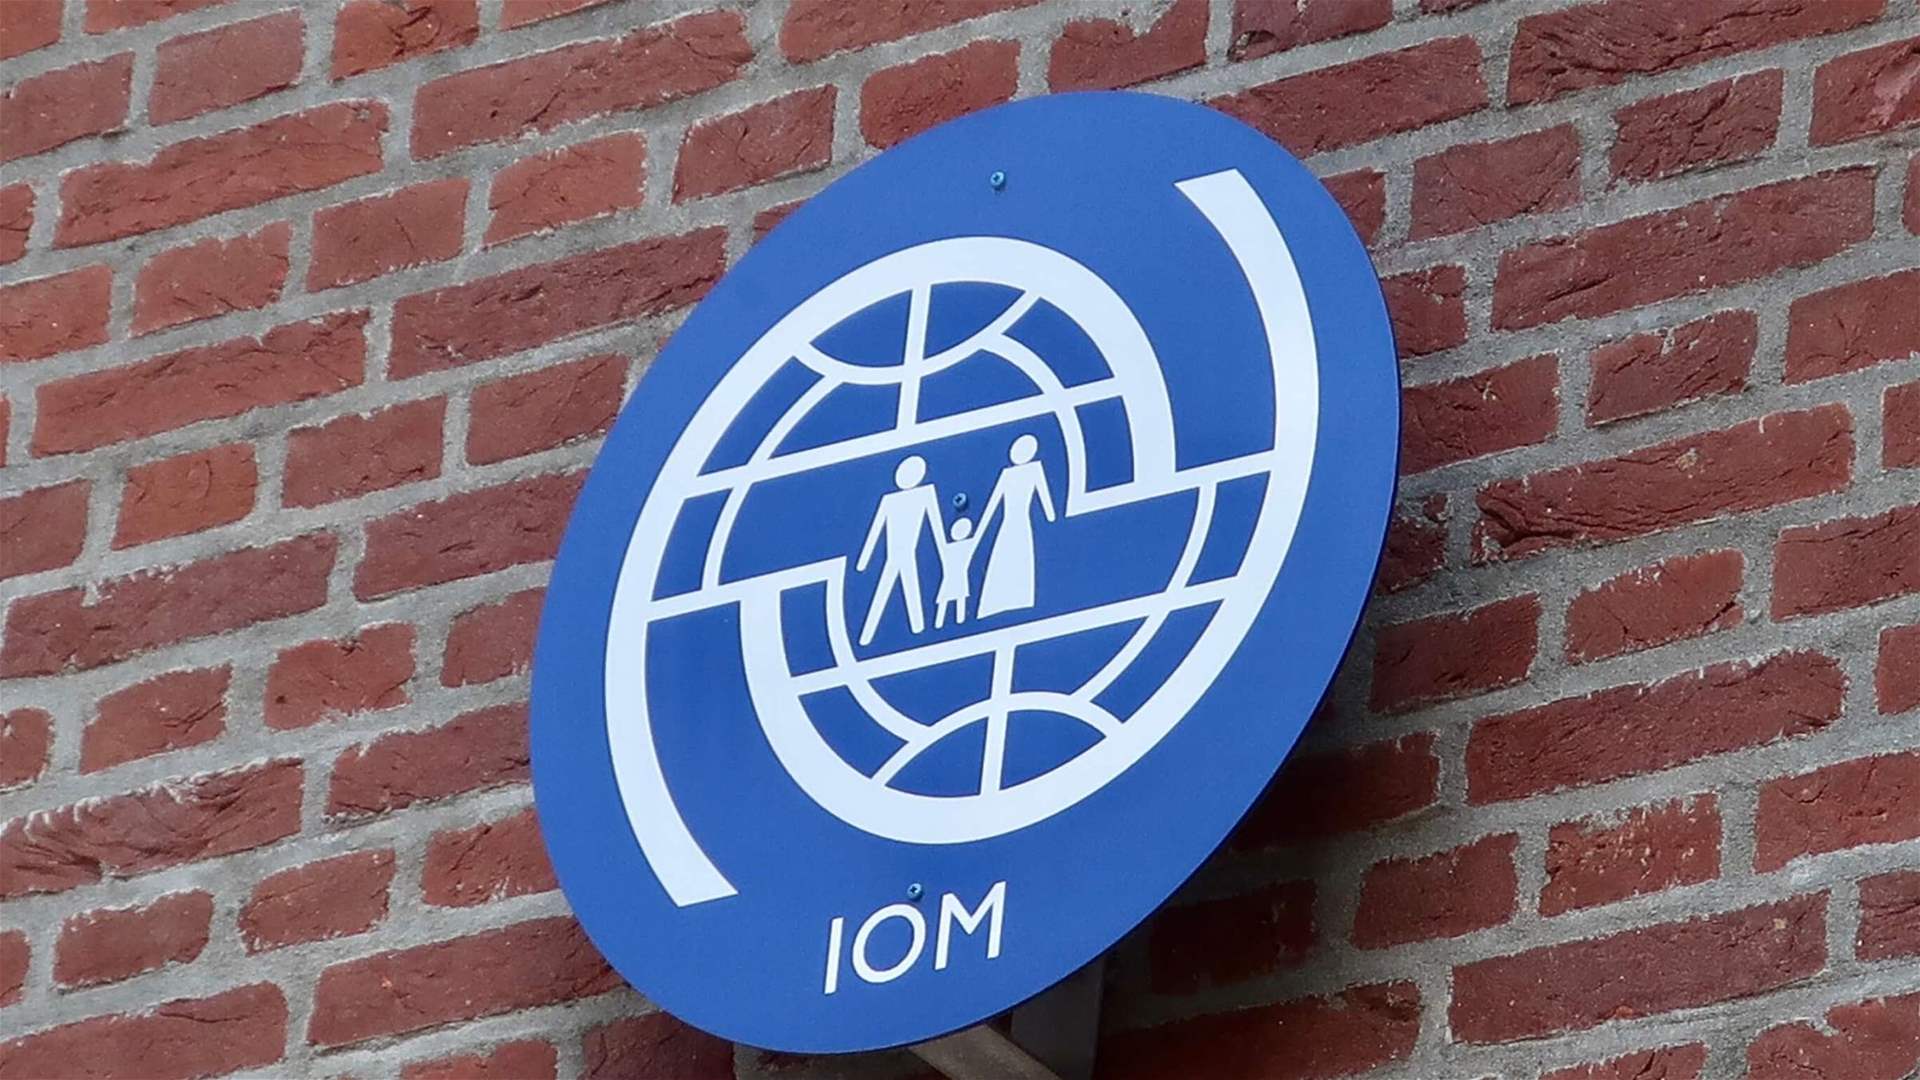 IOM seeks $7.9 billion to address unprecedented migration challenges